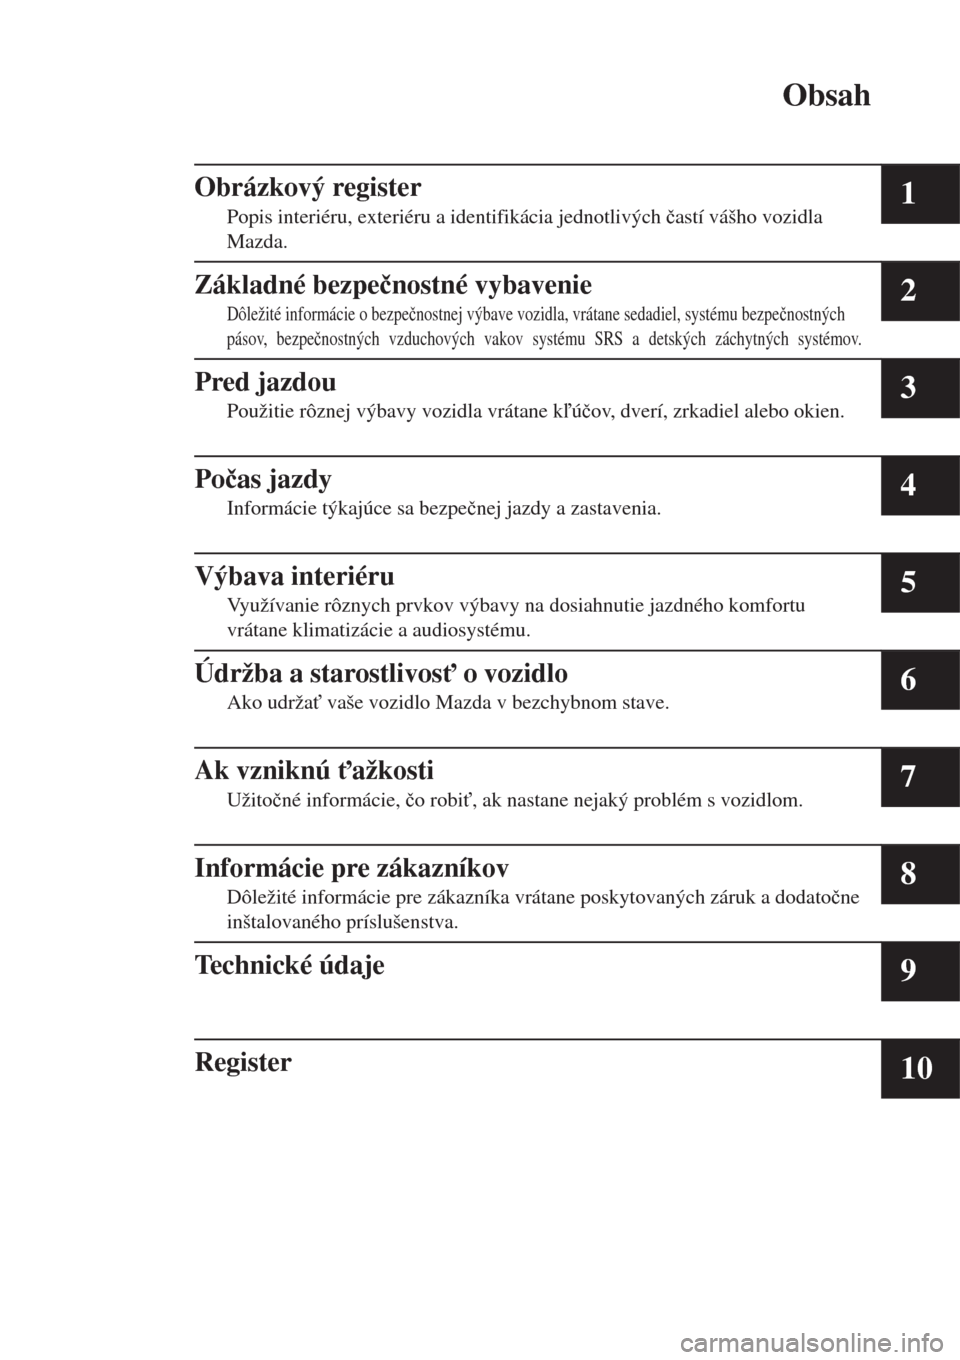 MAZDA MODEL MX-5 2017  Užívateľská príručka (in Slovak) Obsah
Obrázkový register
Popis interiéru, exteriéru a identifikácia jednotlivých �þastí vášho vozidla
Mazda.1
Základné bezpe�þnostné vybavenie
Dôležité informácie o bezpe�þnostnej v